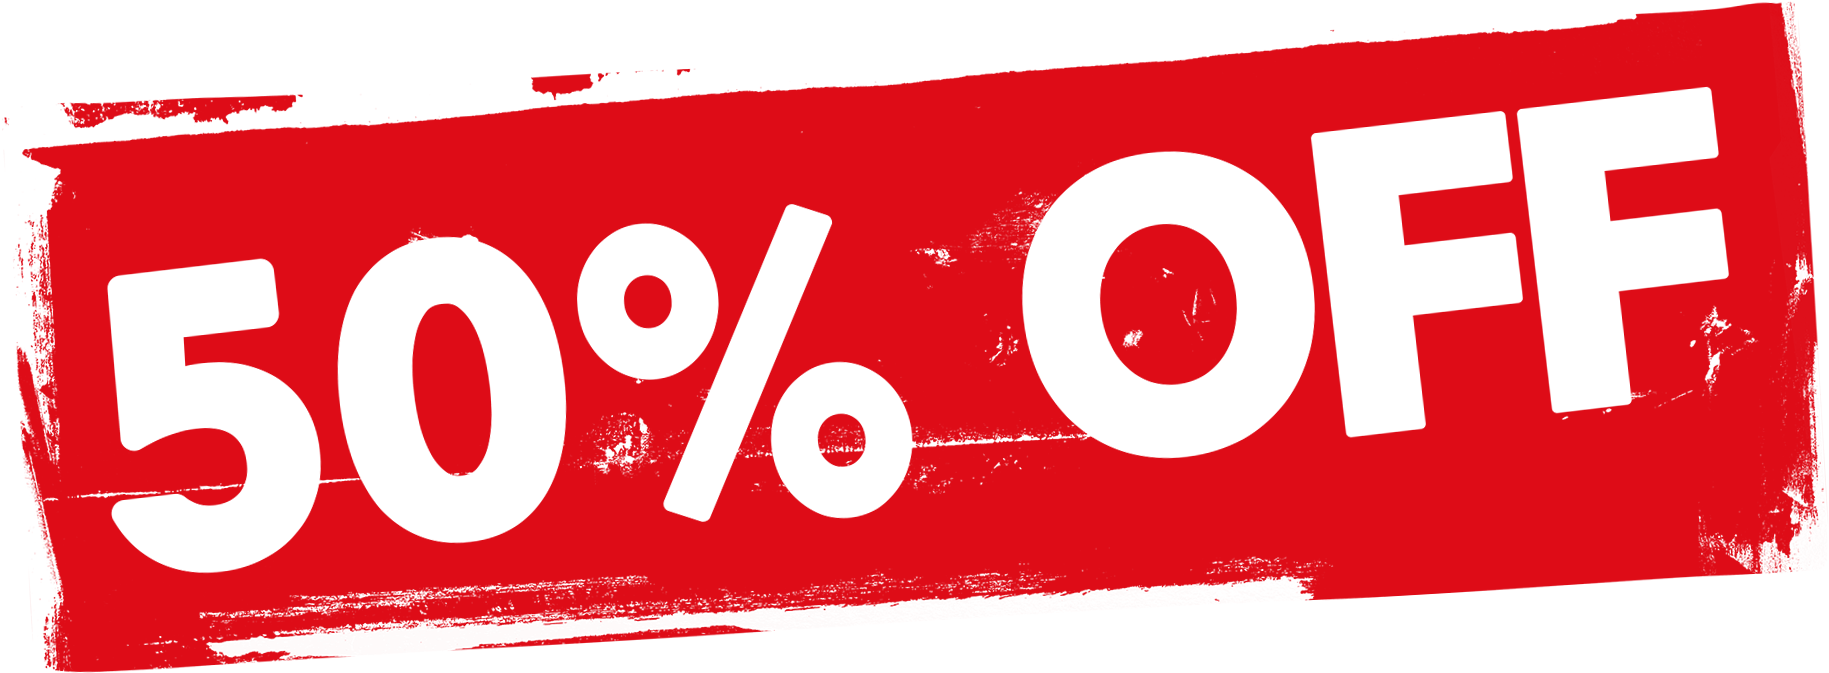 50 Percent Discount Sign PNG